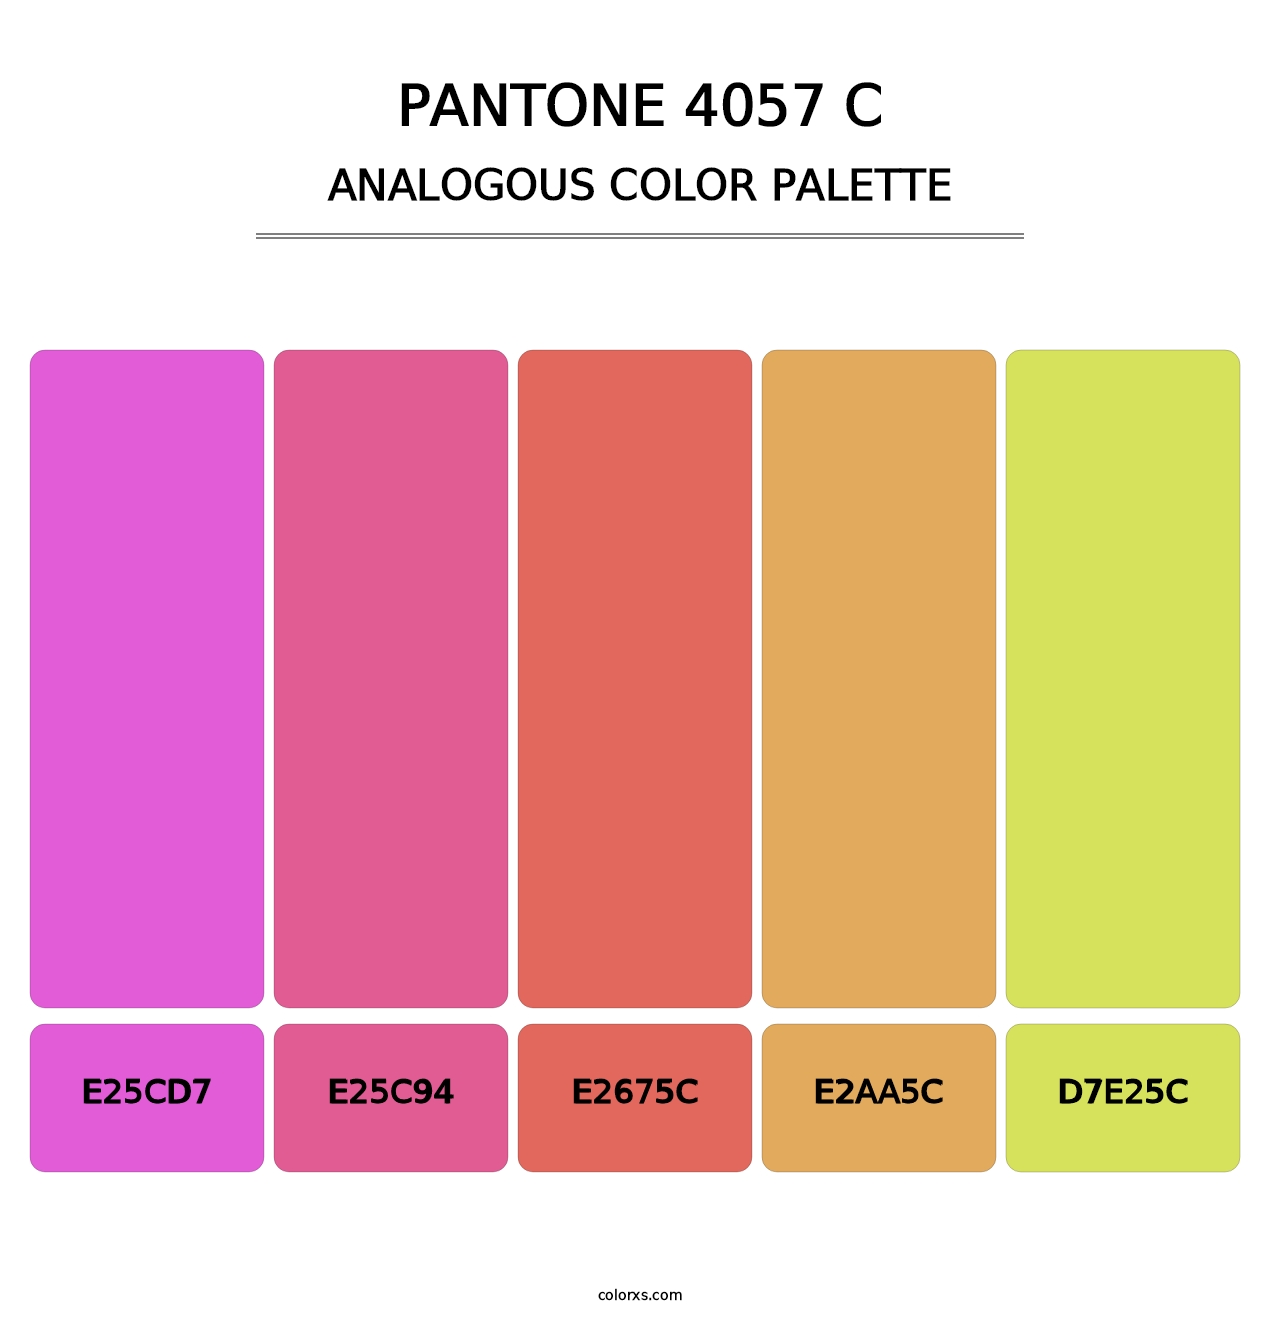 PANTONE 4057 C - Analogous Color Palette